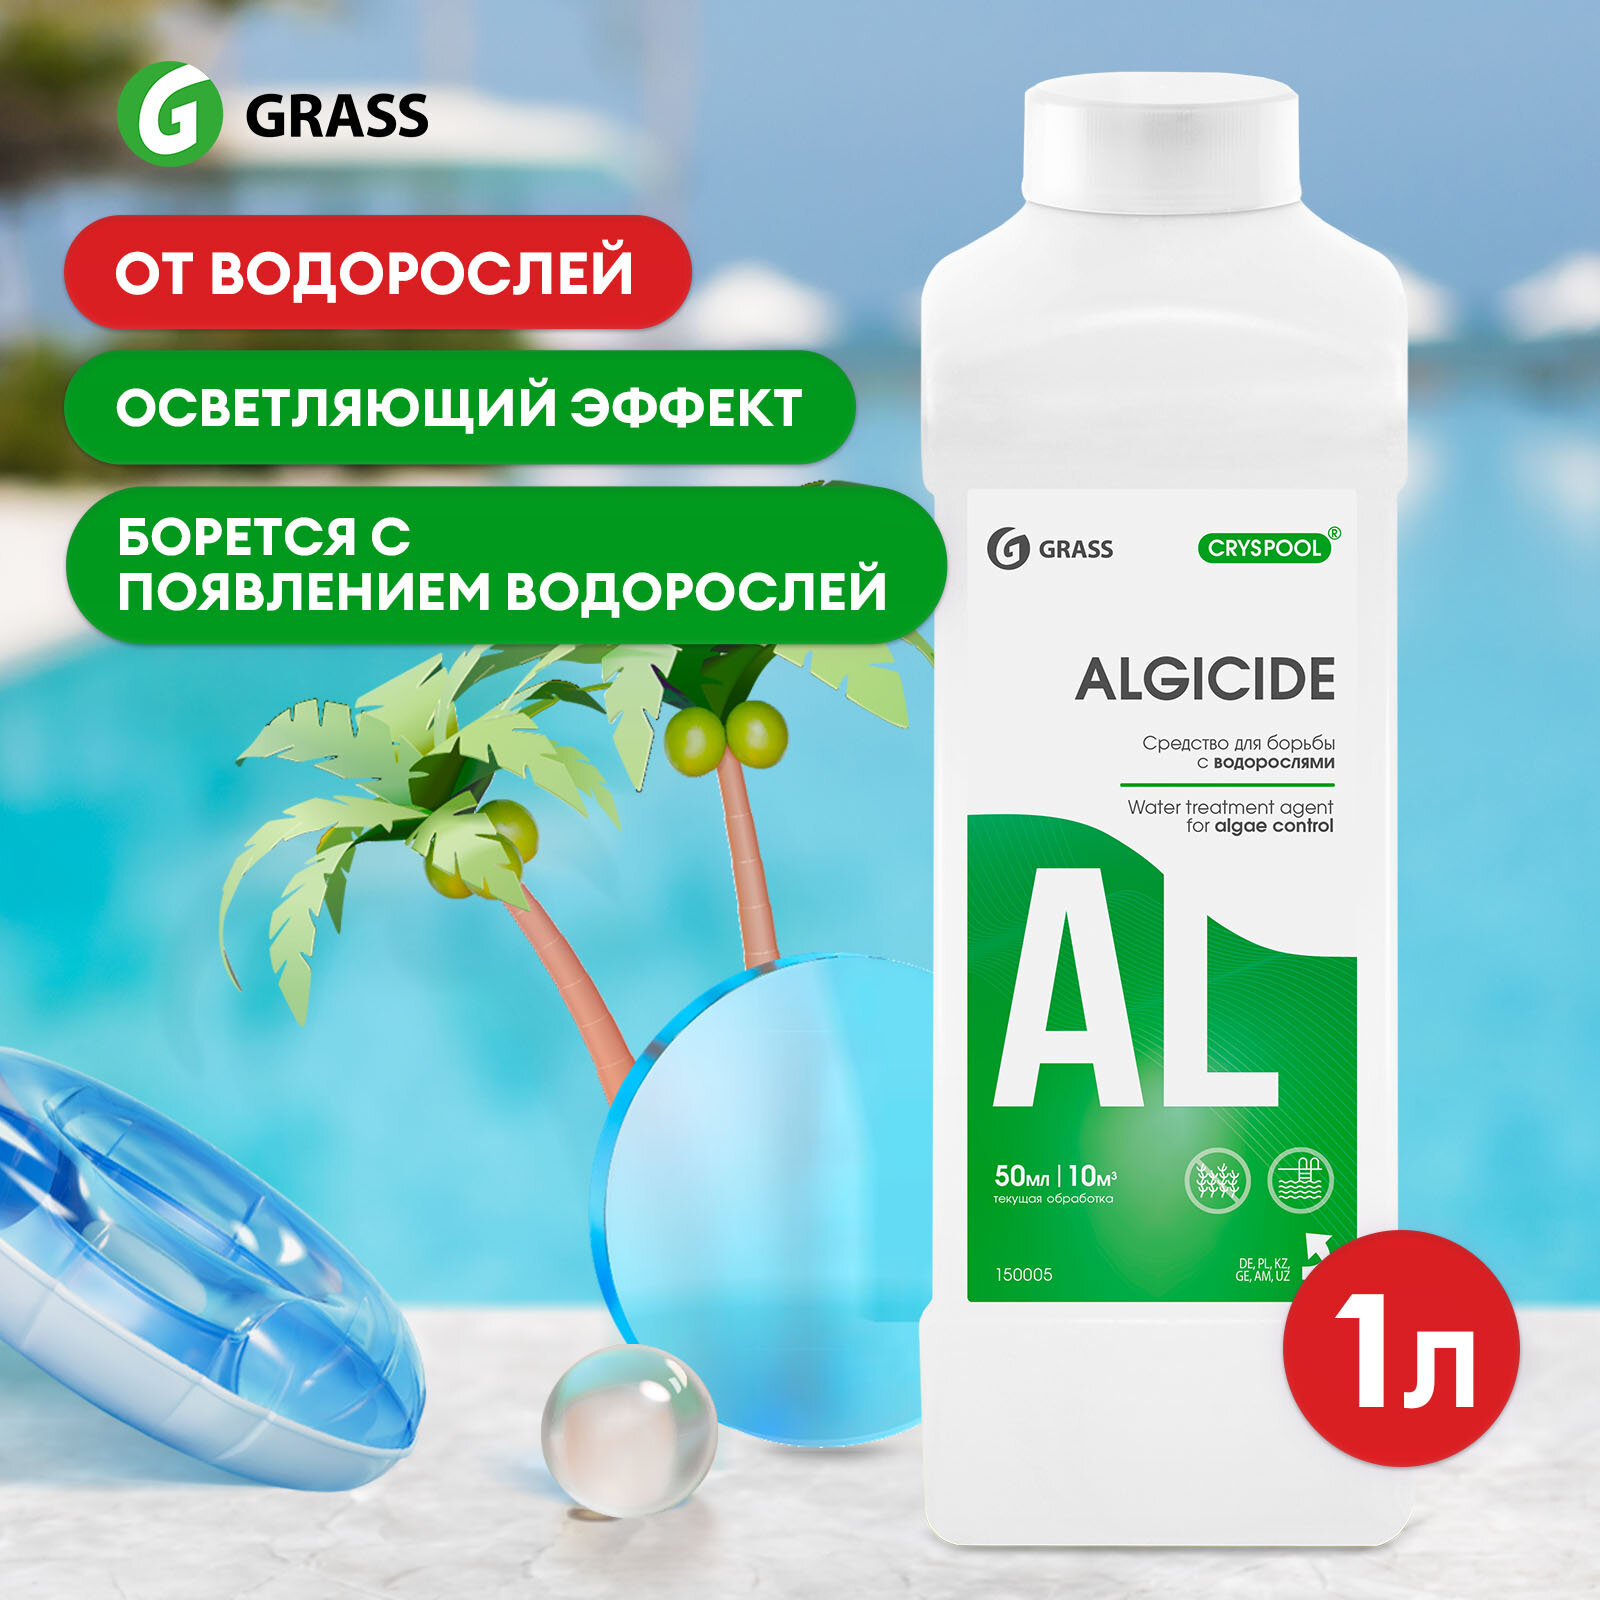 Жидкость для бассейна Grass Cryspool algicide для борьбы с водорослями